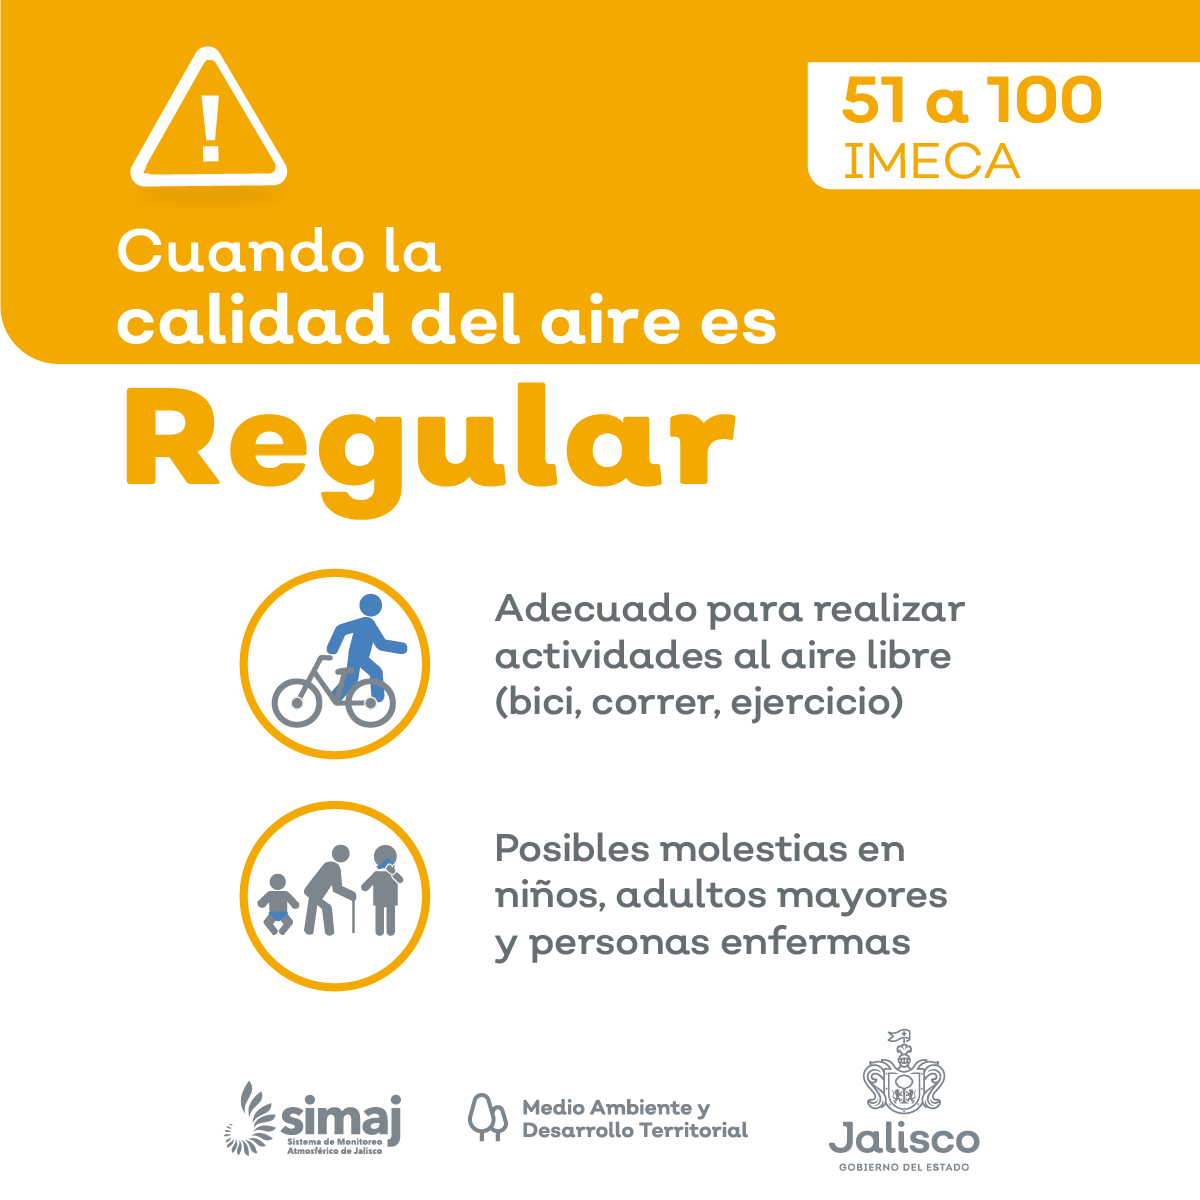 mié. 05:00 a.m. En #AMG la #CalidadDelAire Promedio es : REGULAR, nivel máximo registrado 102 puntos IMECA en Las Pintas Consulta Índice de calidad del aire en AMG : aire.jalisco.gob.mx